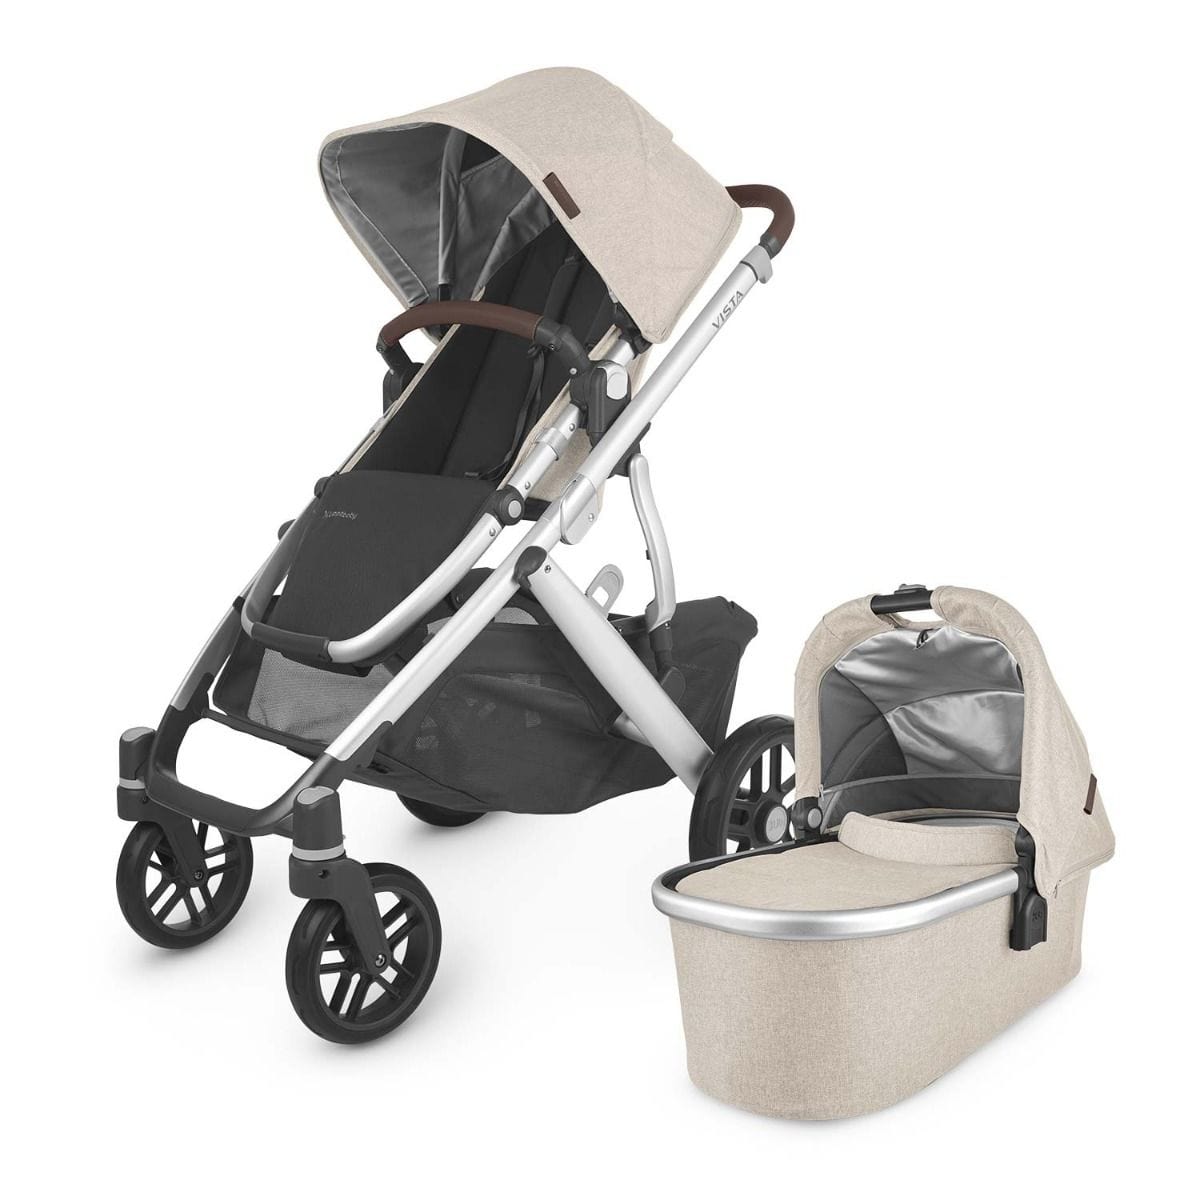 UPPAbaby stroller UPPAbaby VISTA V2 Stroller - Declan (Oatmeal Melange/Silver/Chestnut Leather)